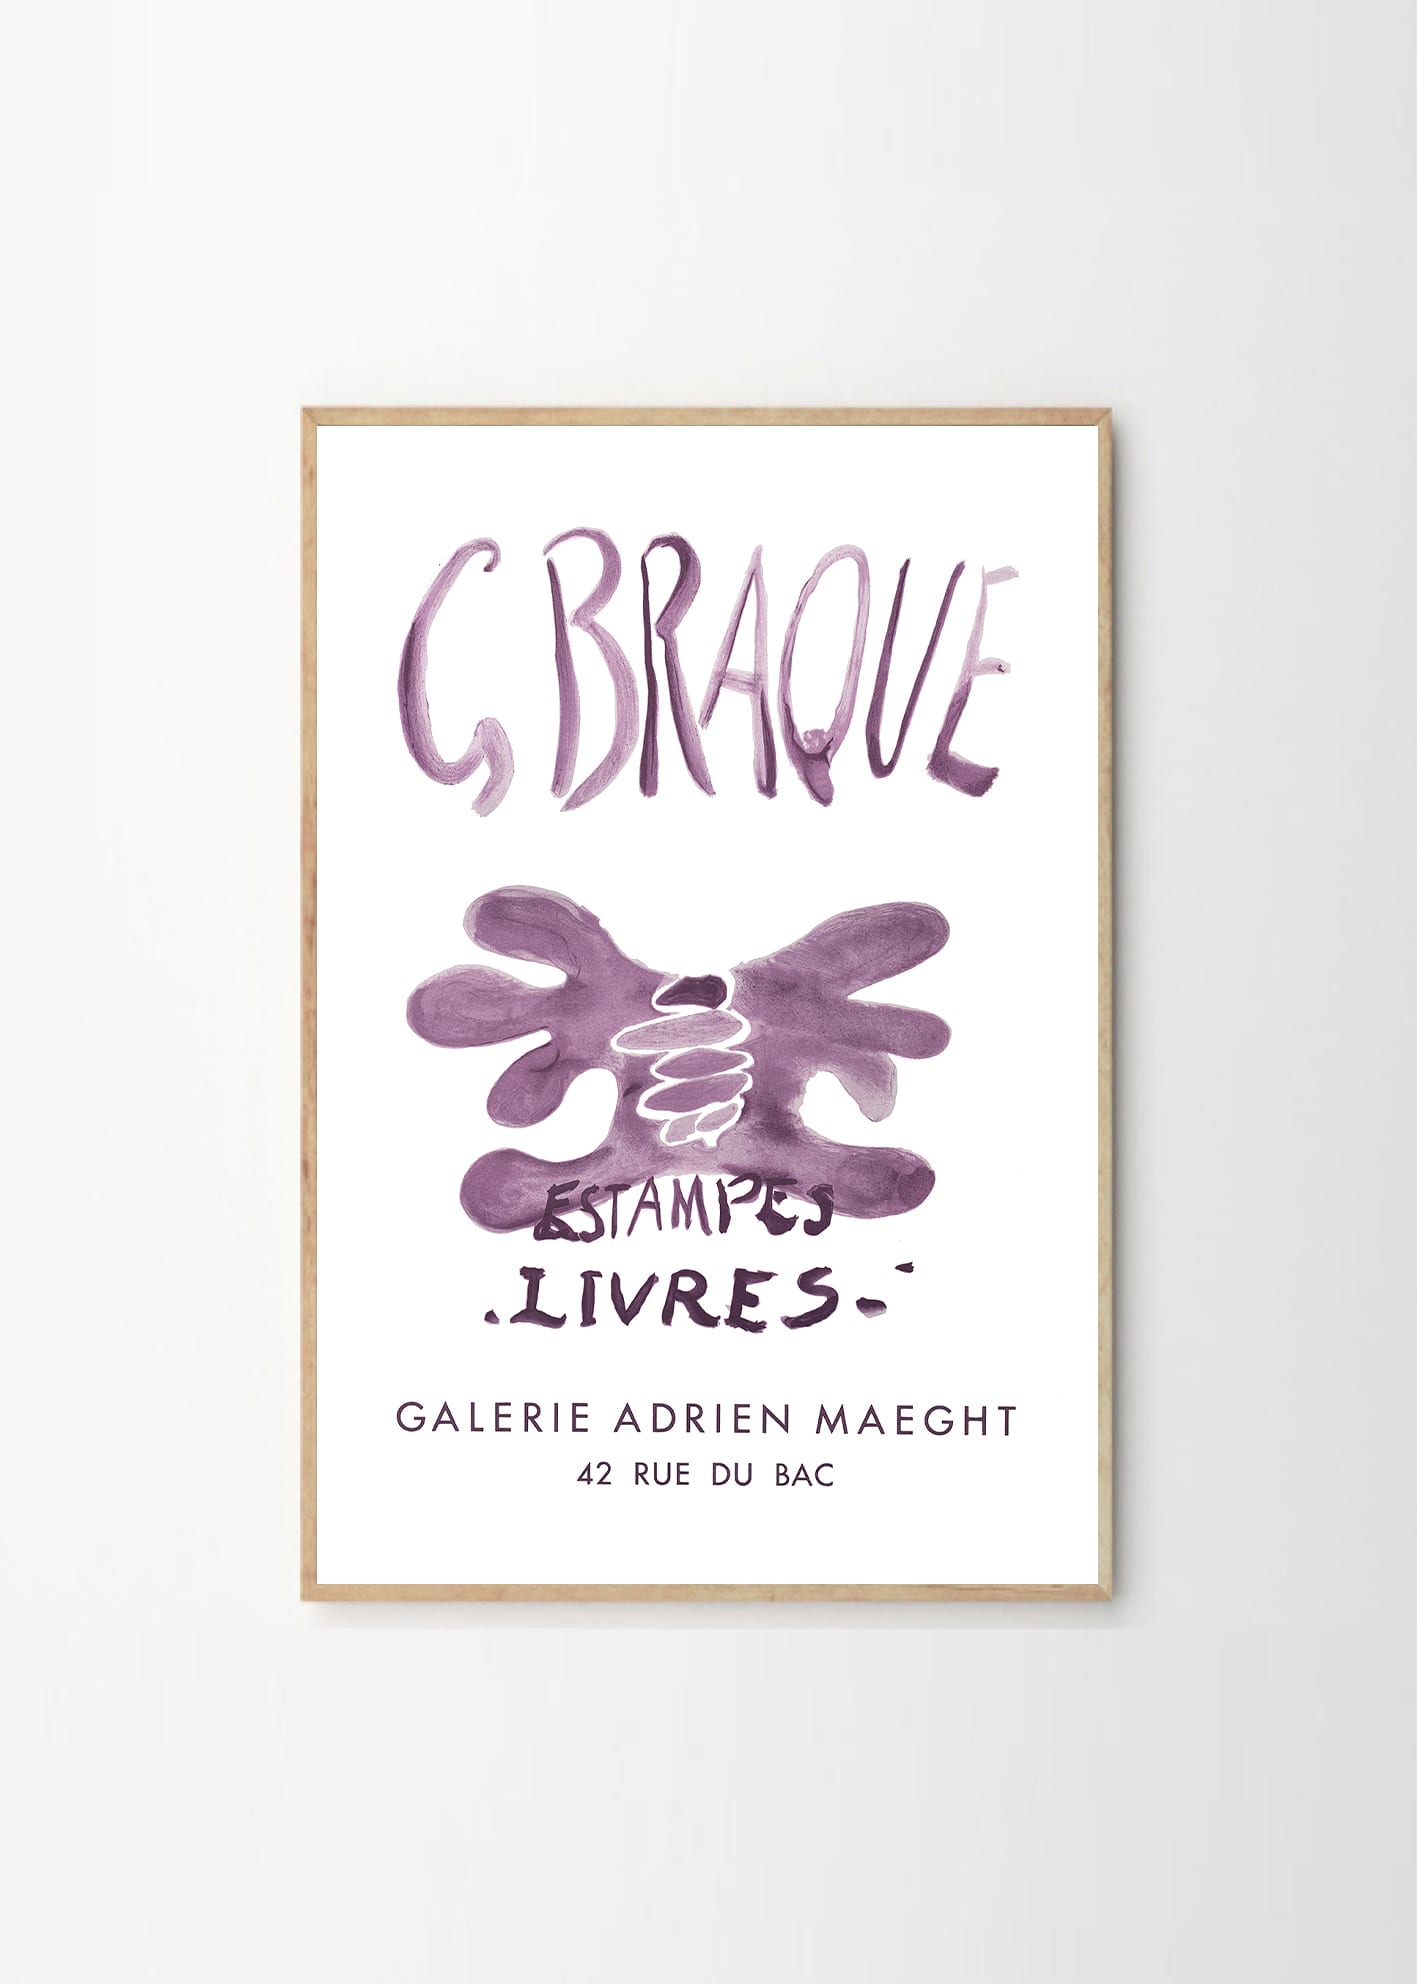 Udvikle kun forråde Galerie Maeght, Georges Braque, Estampes Livres - THE POSTER CLUB